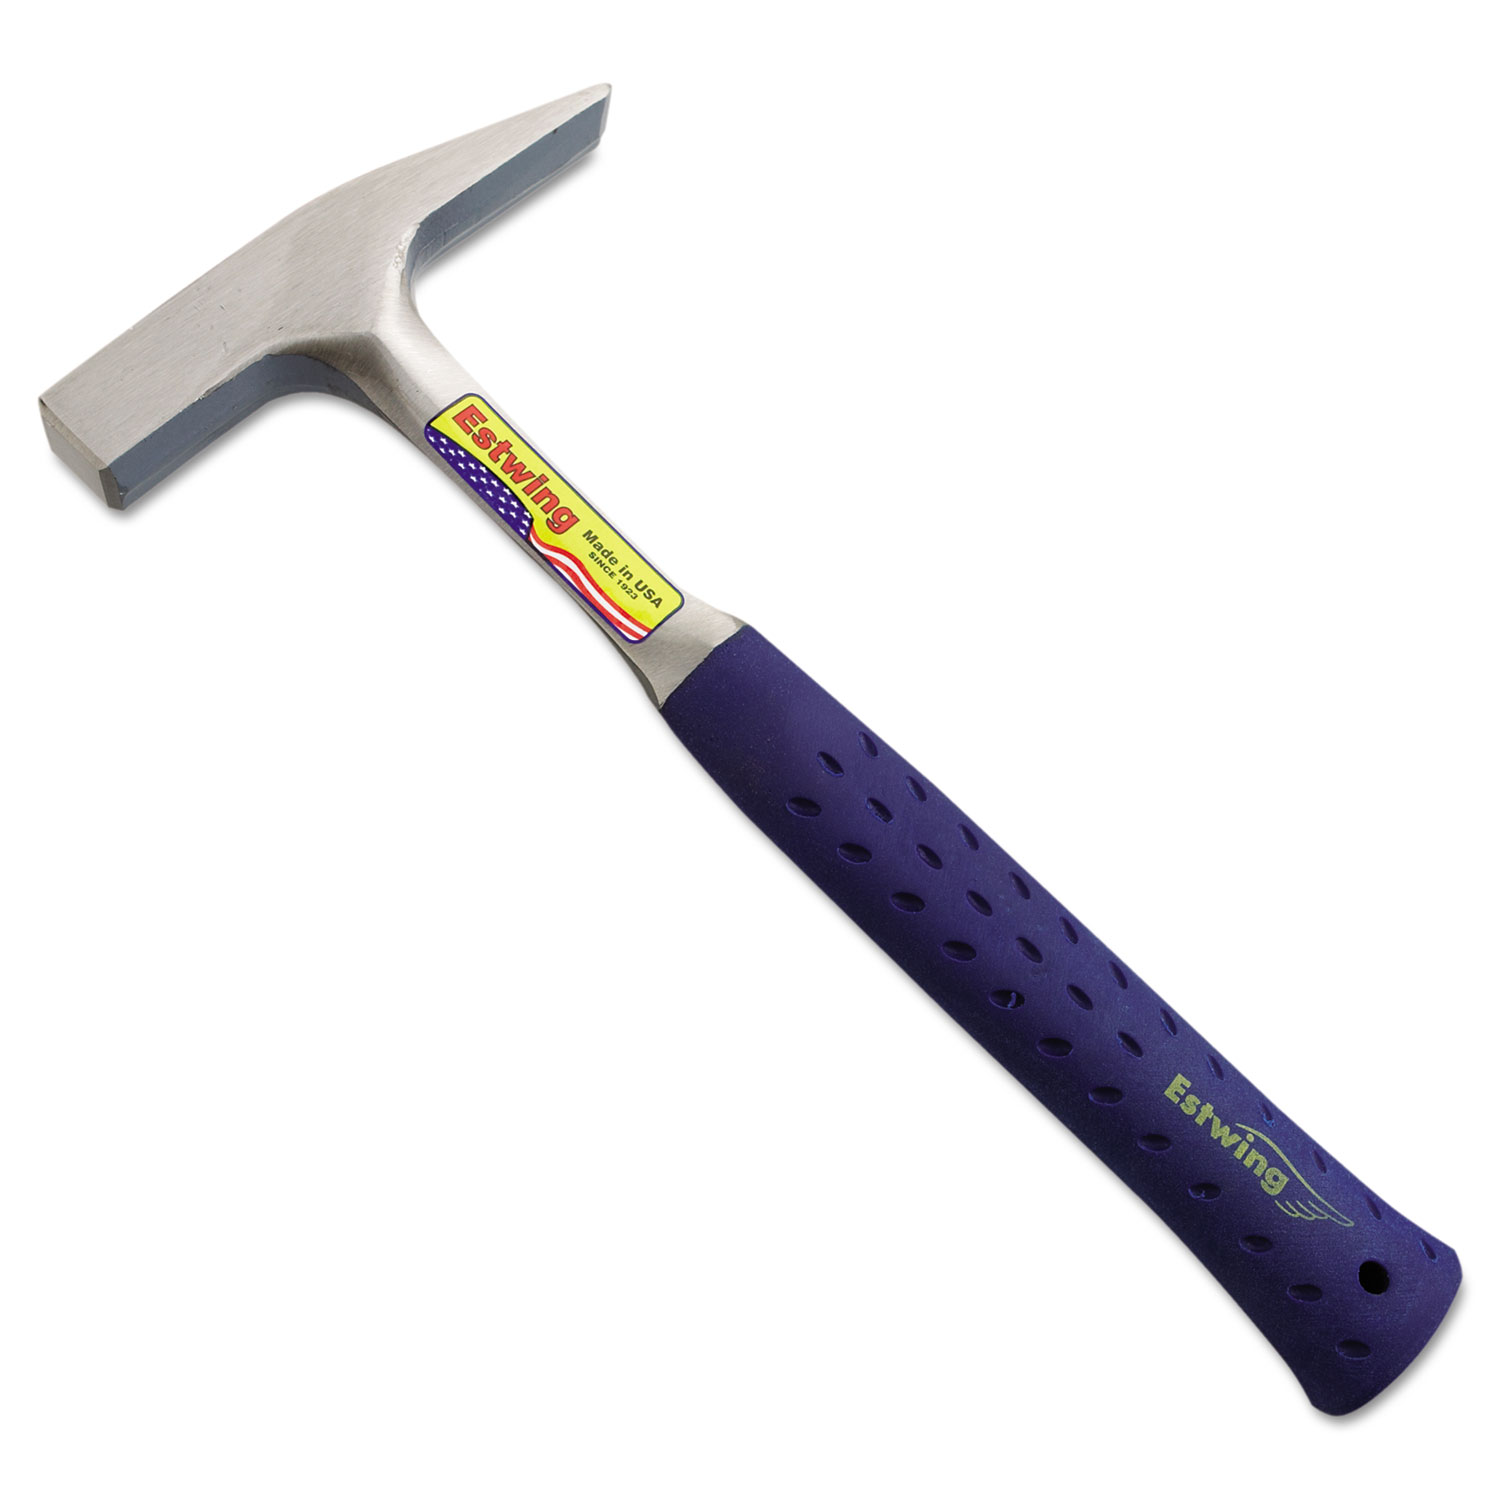 Tinners Hammer, 18oz, 12 Tool Length, Cushion Grip